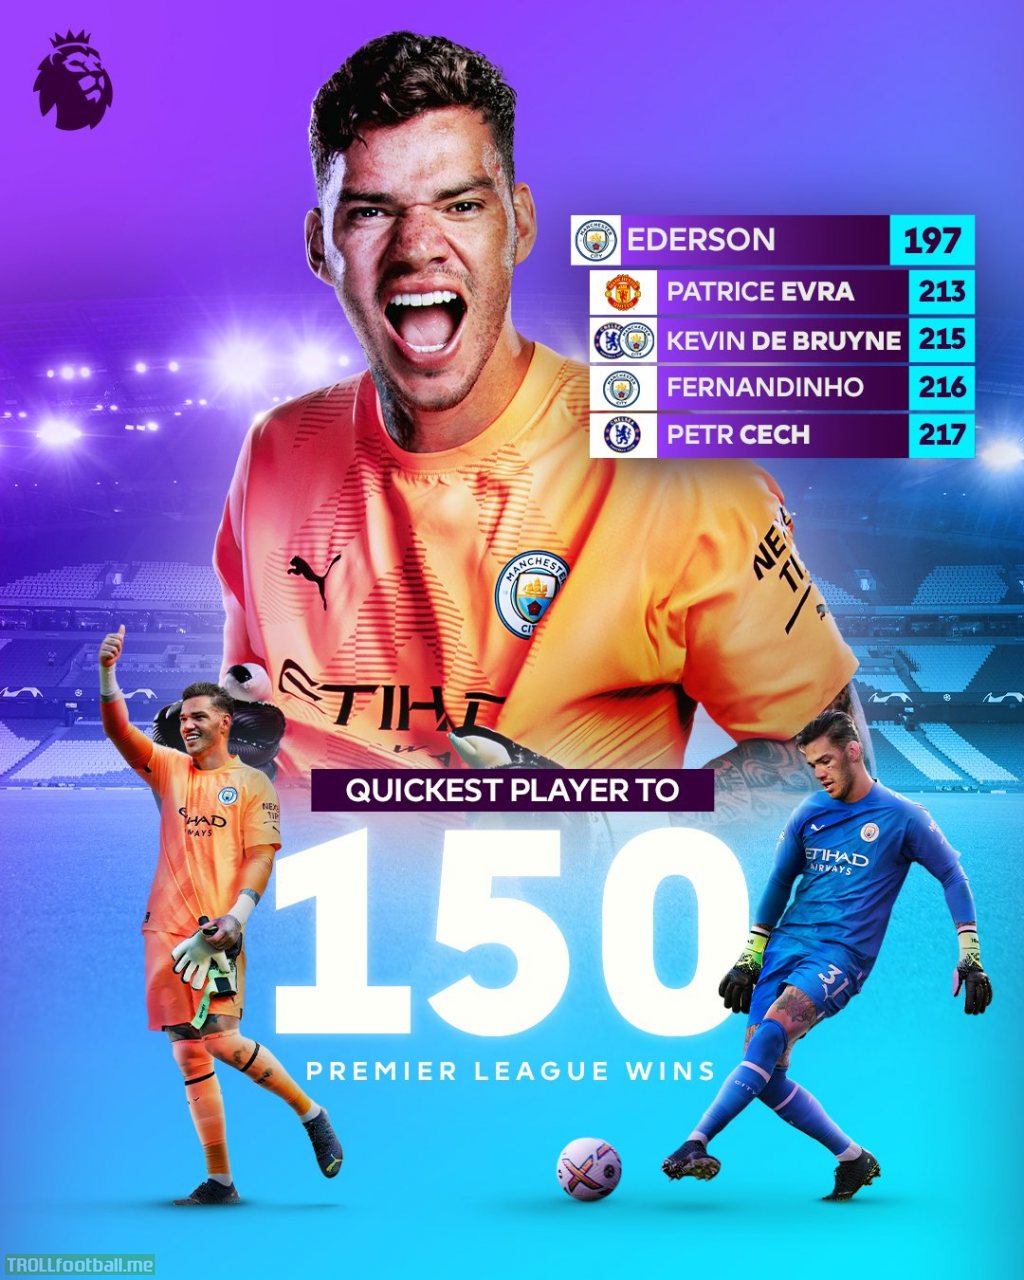 [Premier League] Ederson Moraes reaches 150 Premier League wins in record time!